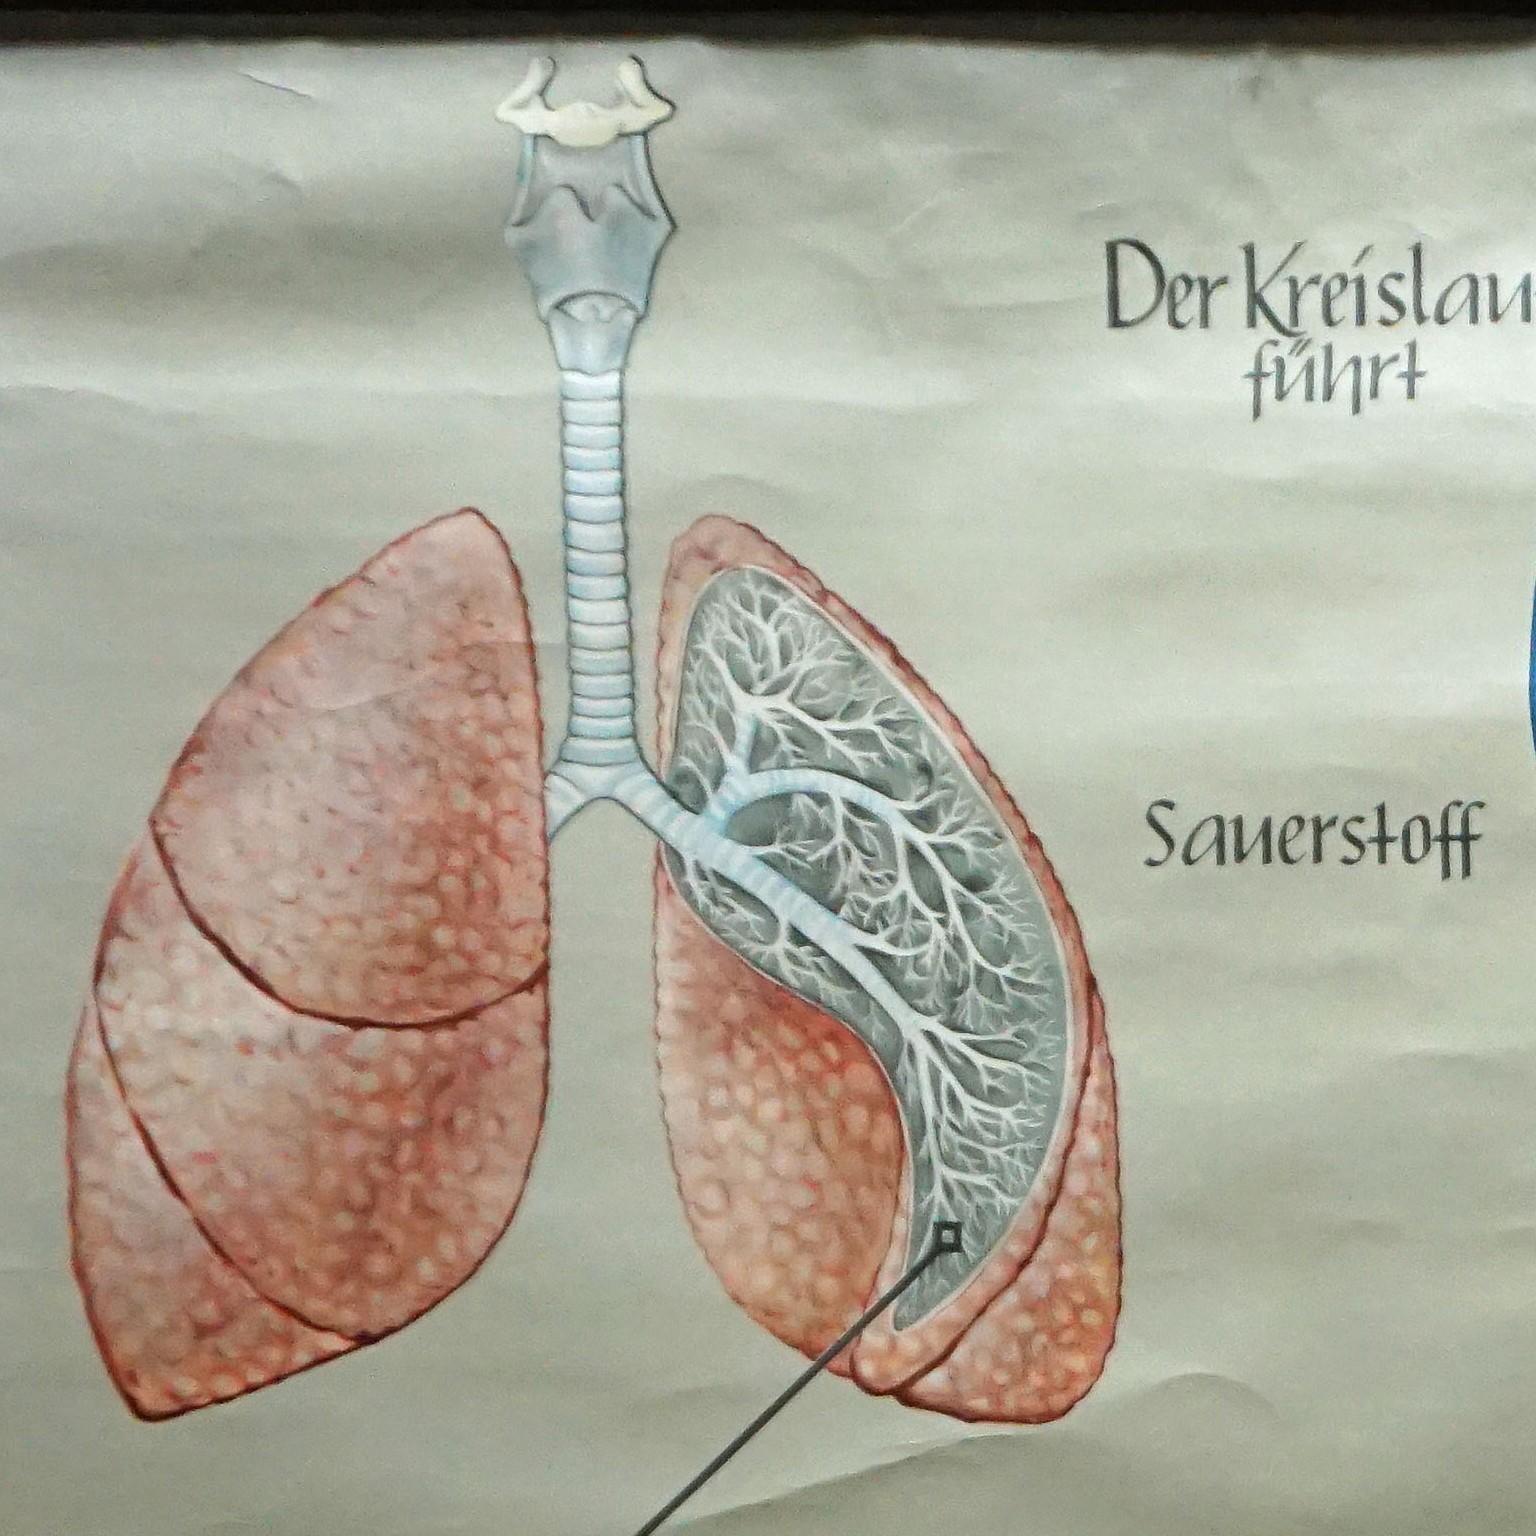 Eine alte medizinische Wandtafel, die die menschliche Atmung und den Blutkreislauf illustriert, herausgegeben von Hagemann, Düsseldorf. Farbenfroher Druck auf mit Leinwand verstärktem Papier.
Abmessungen:
Breite 168,50 cm (66,34 Zoll)
Höhe 114,50 cm